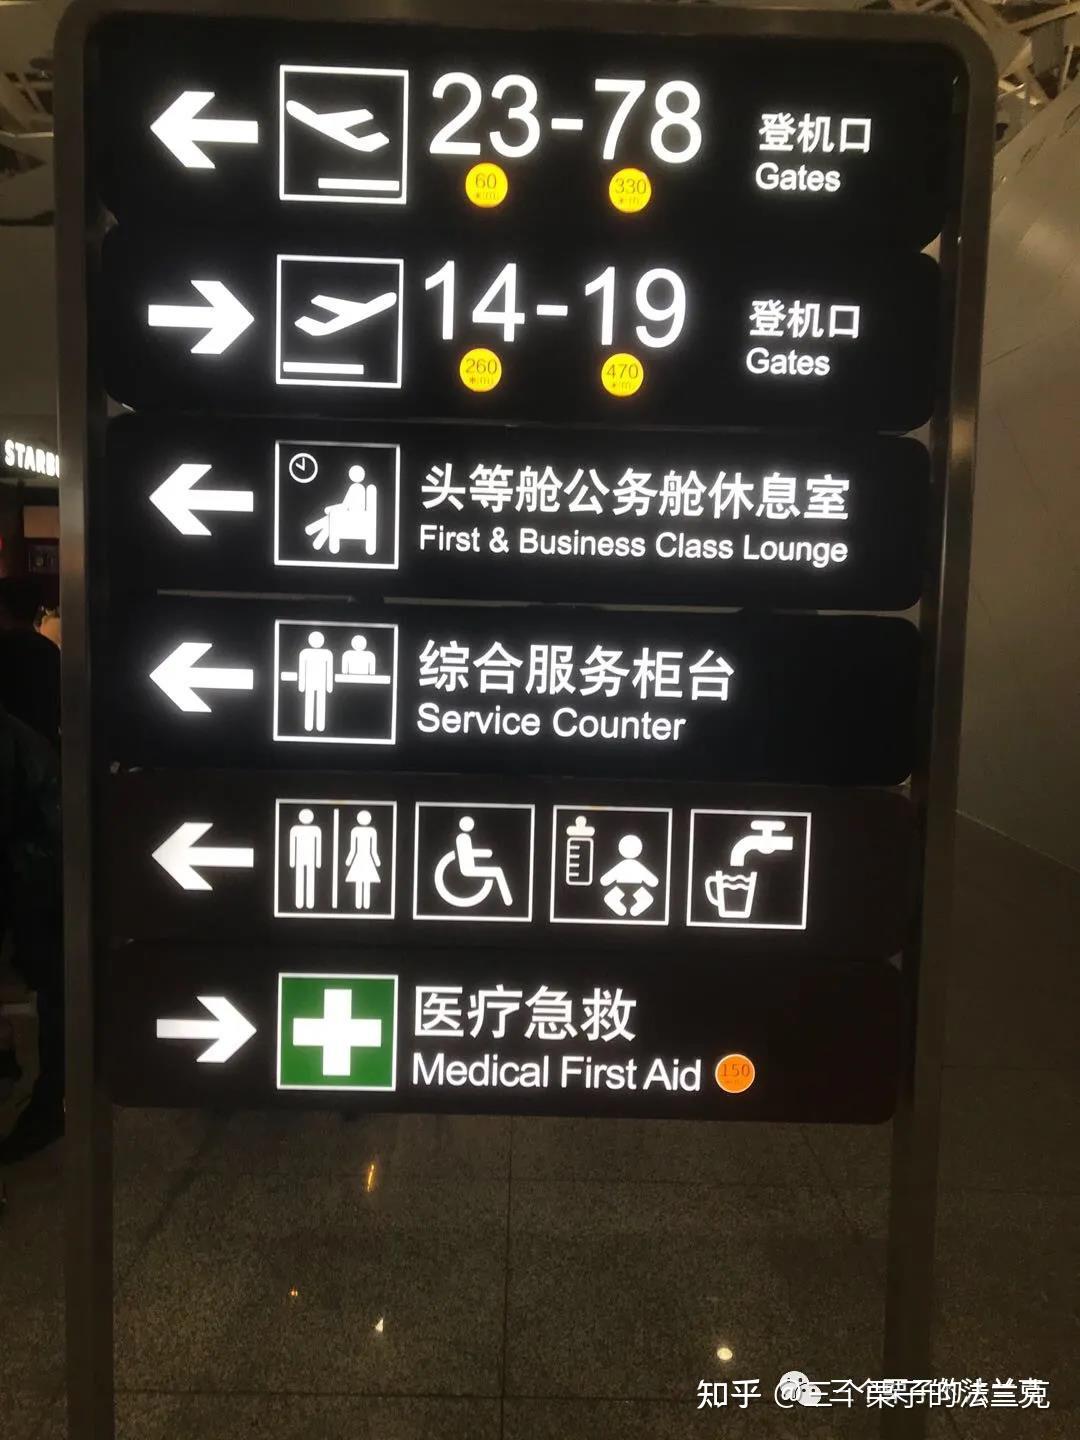 上海虹桥机场标明了步行至登机口的时间上海虹桥机场:这几年,很多机场